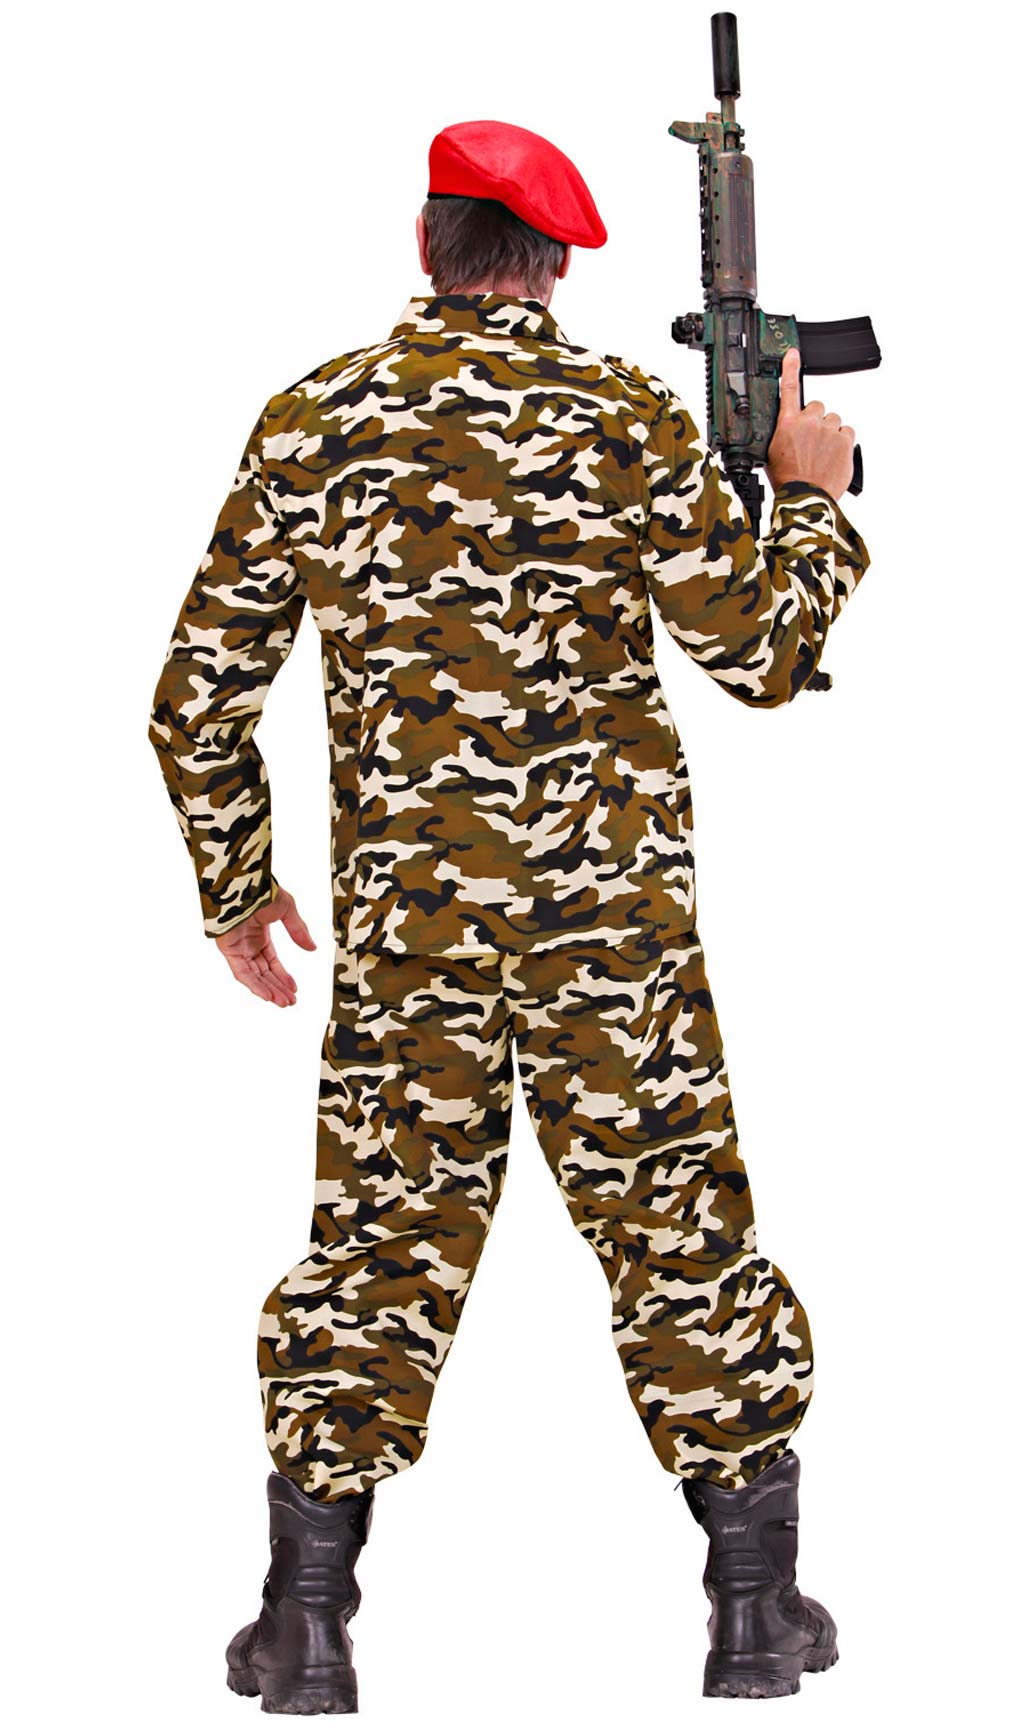 Disfraz Soldado Camuflaje Chaleco adulto > Disfraces para Hombres >  Disfraces de Militares para Hombres > Disfraces para Adultos